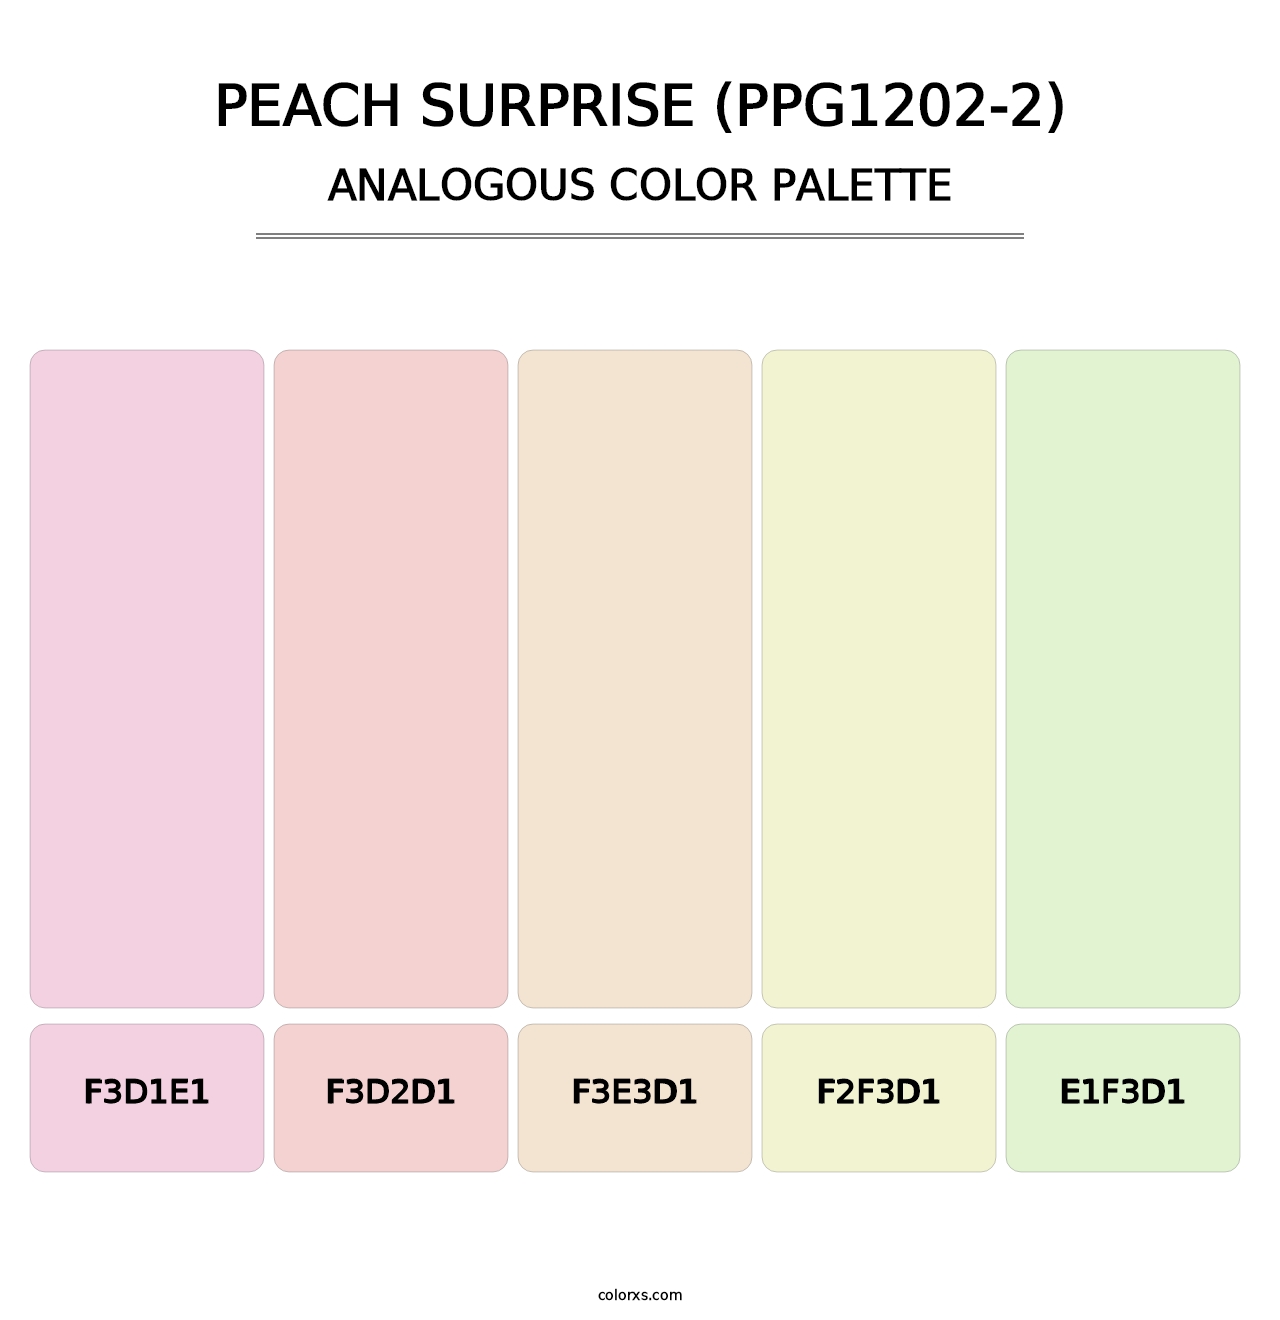 Peach Surprise (PPG1202-2) - Analogous Color Palette